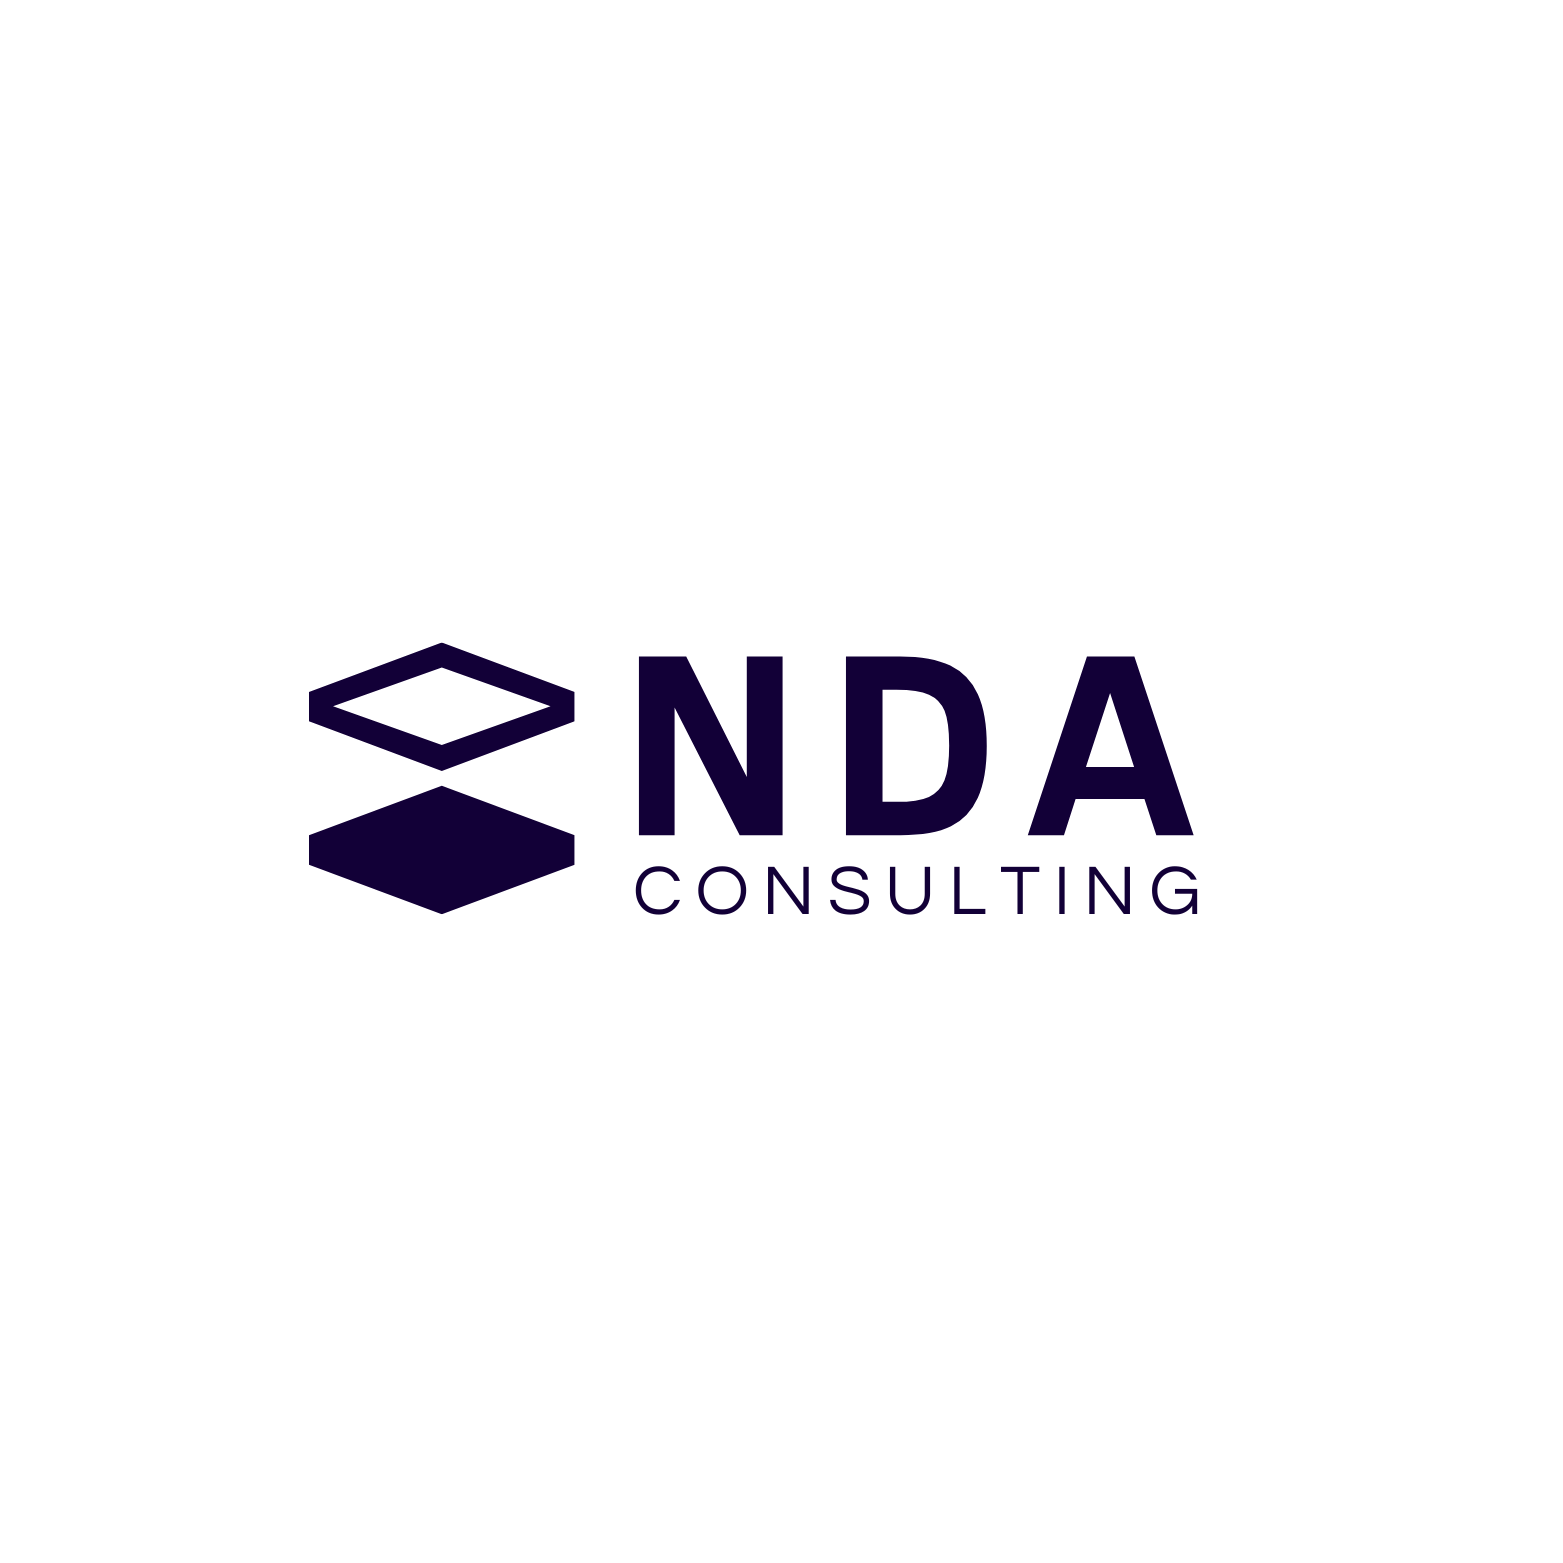 NDA Consulting 